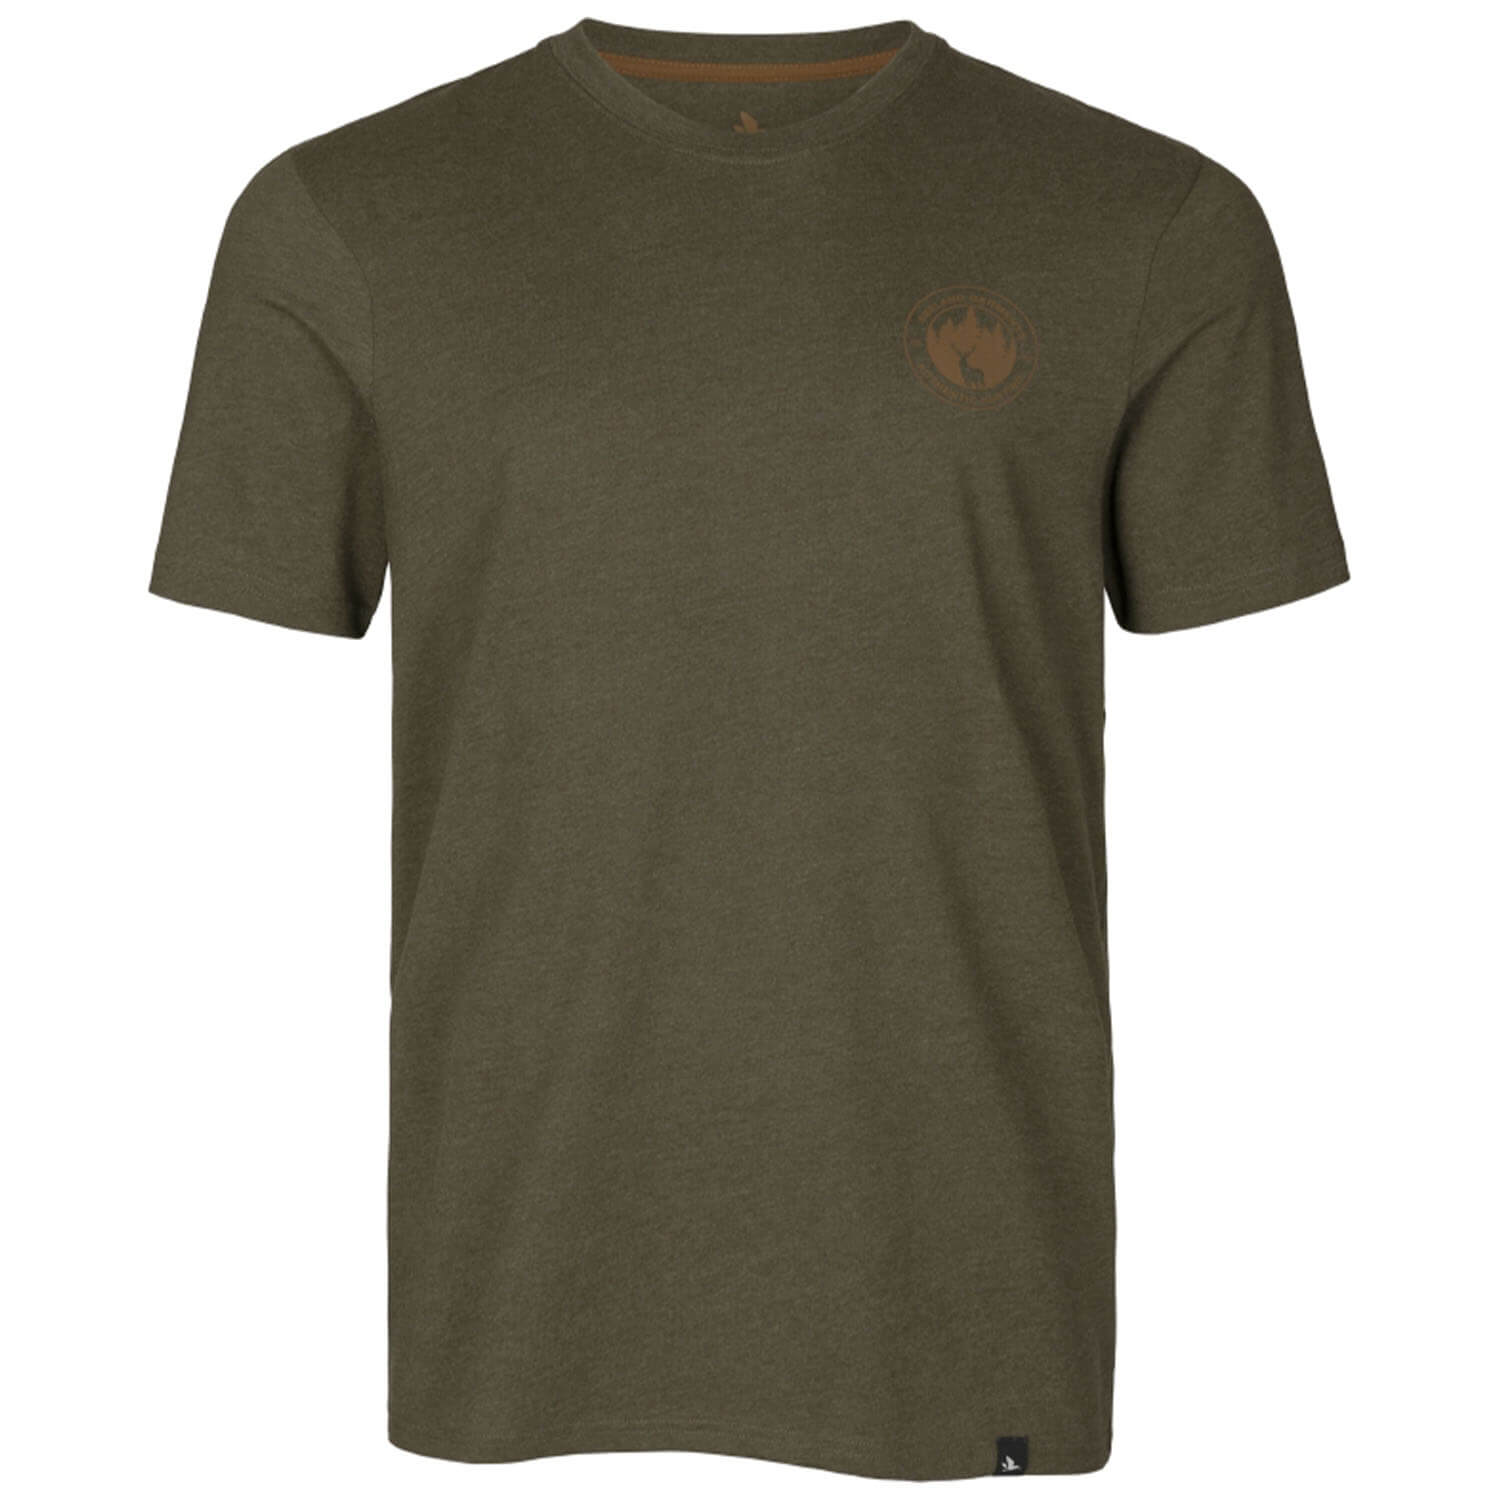  Seeland T-shirt Saker (Dennengroen gemêleerd) - Jachtshirts